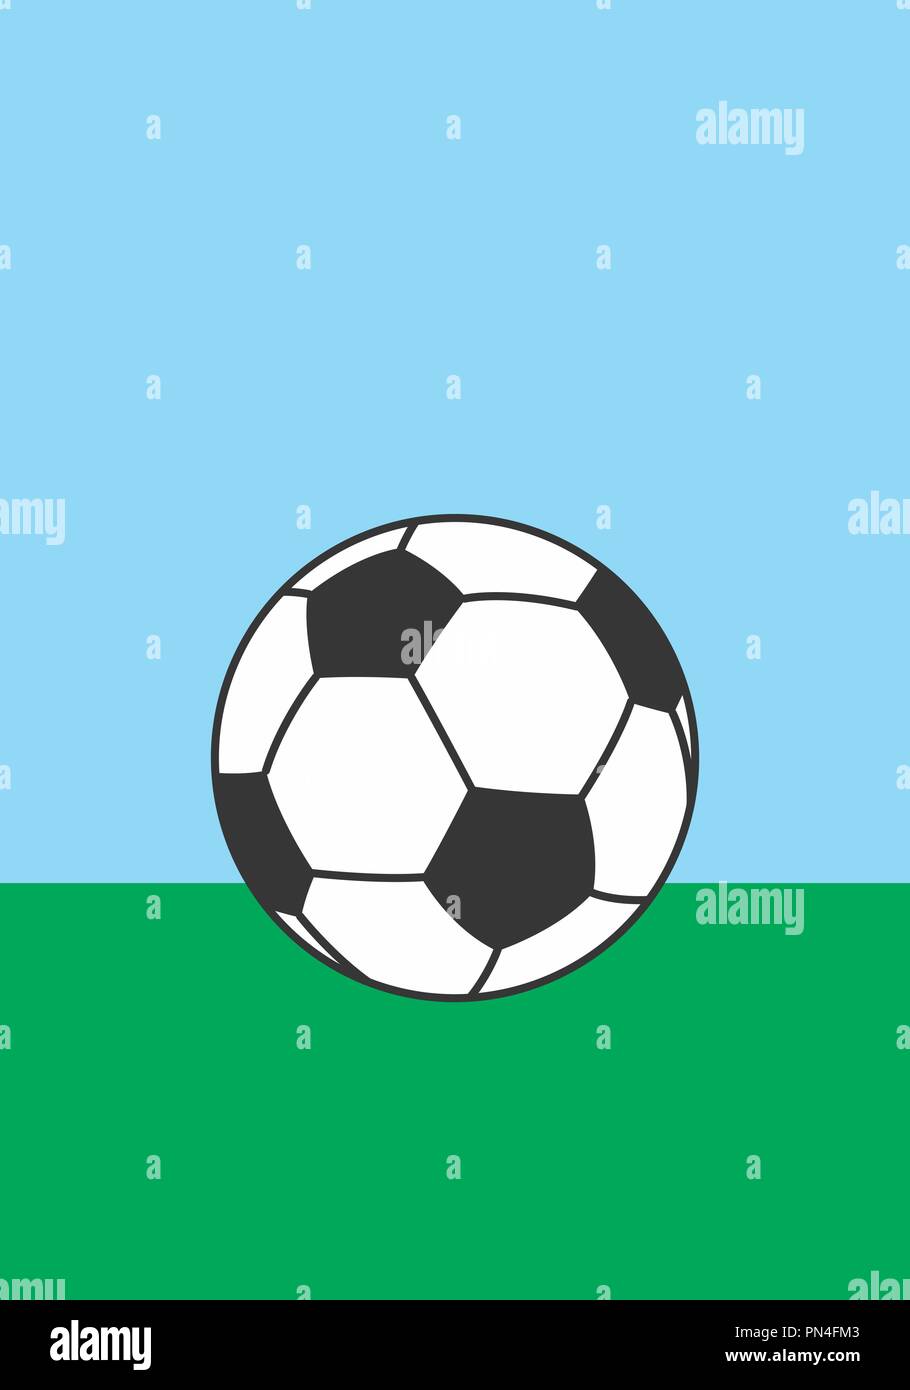 Ilustración de un balón de fútbol en el césped verde Ilustración del Vector